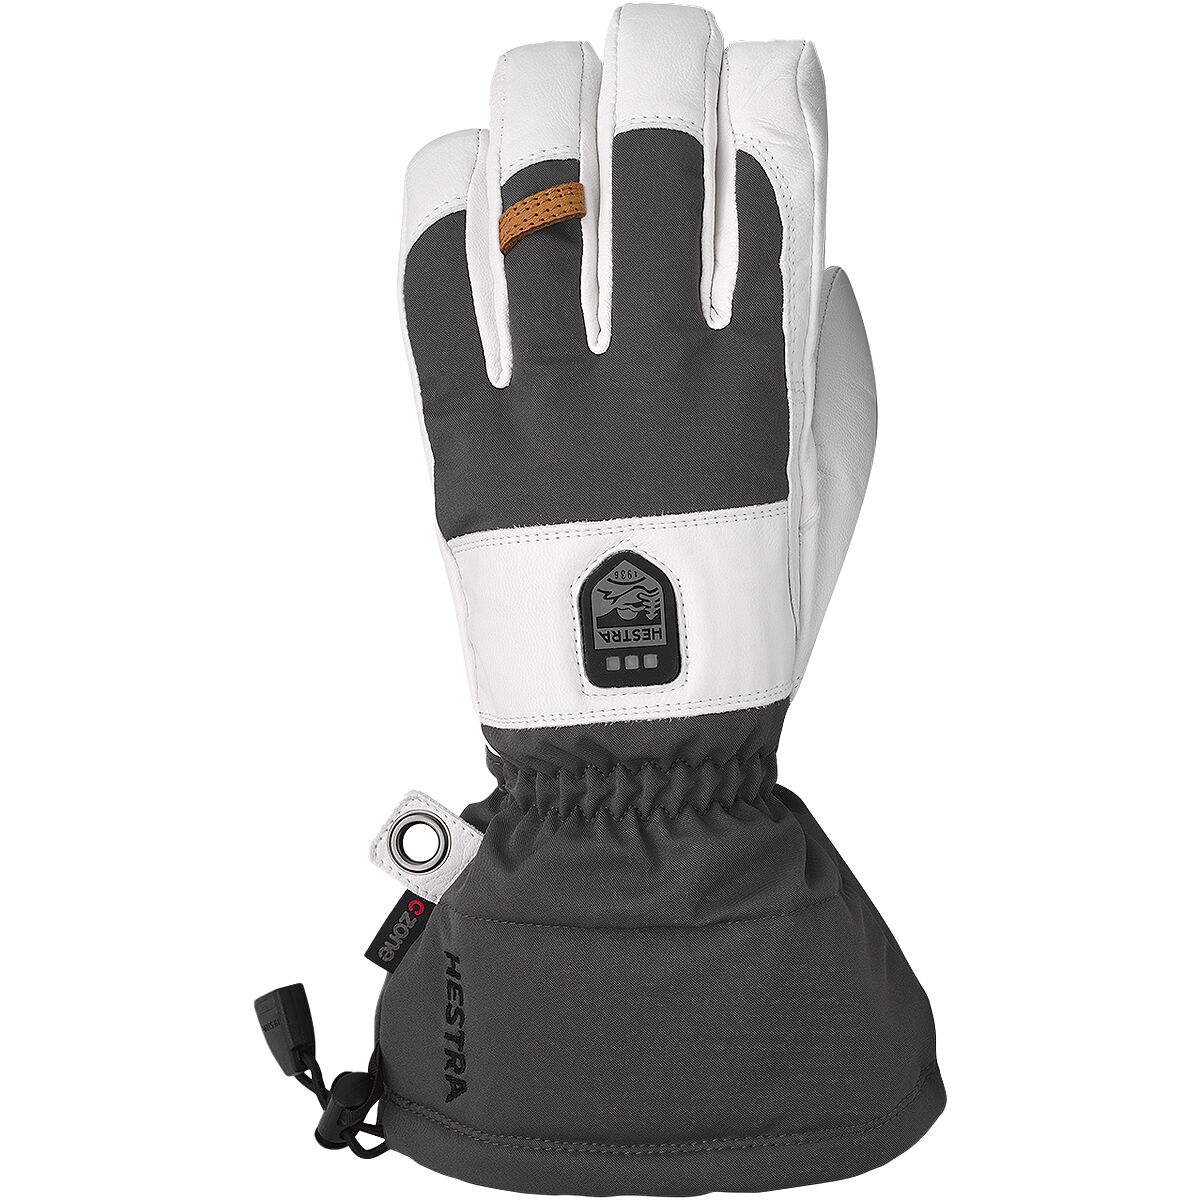 Hestra Power Heater Gauntlet Glove - Men's Grey/White